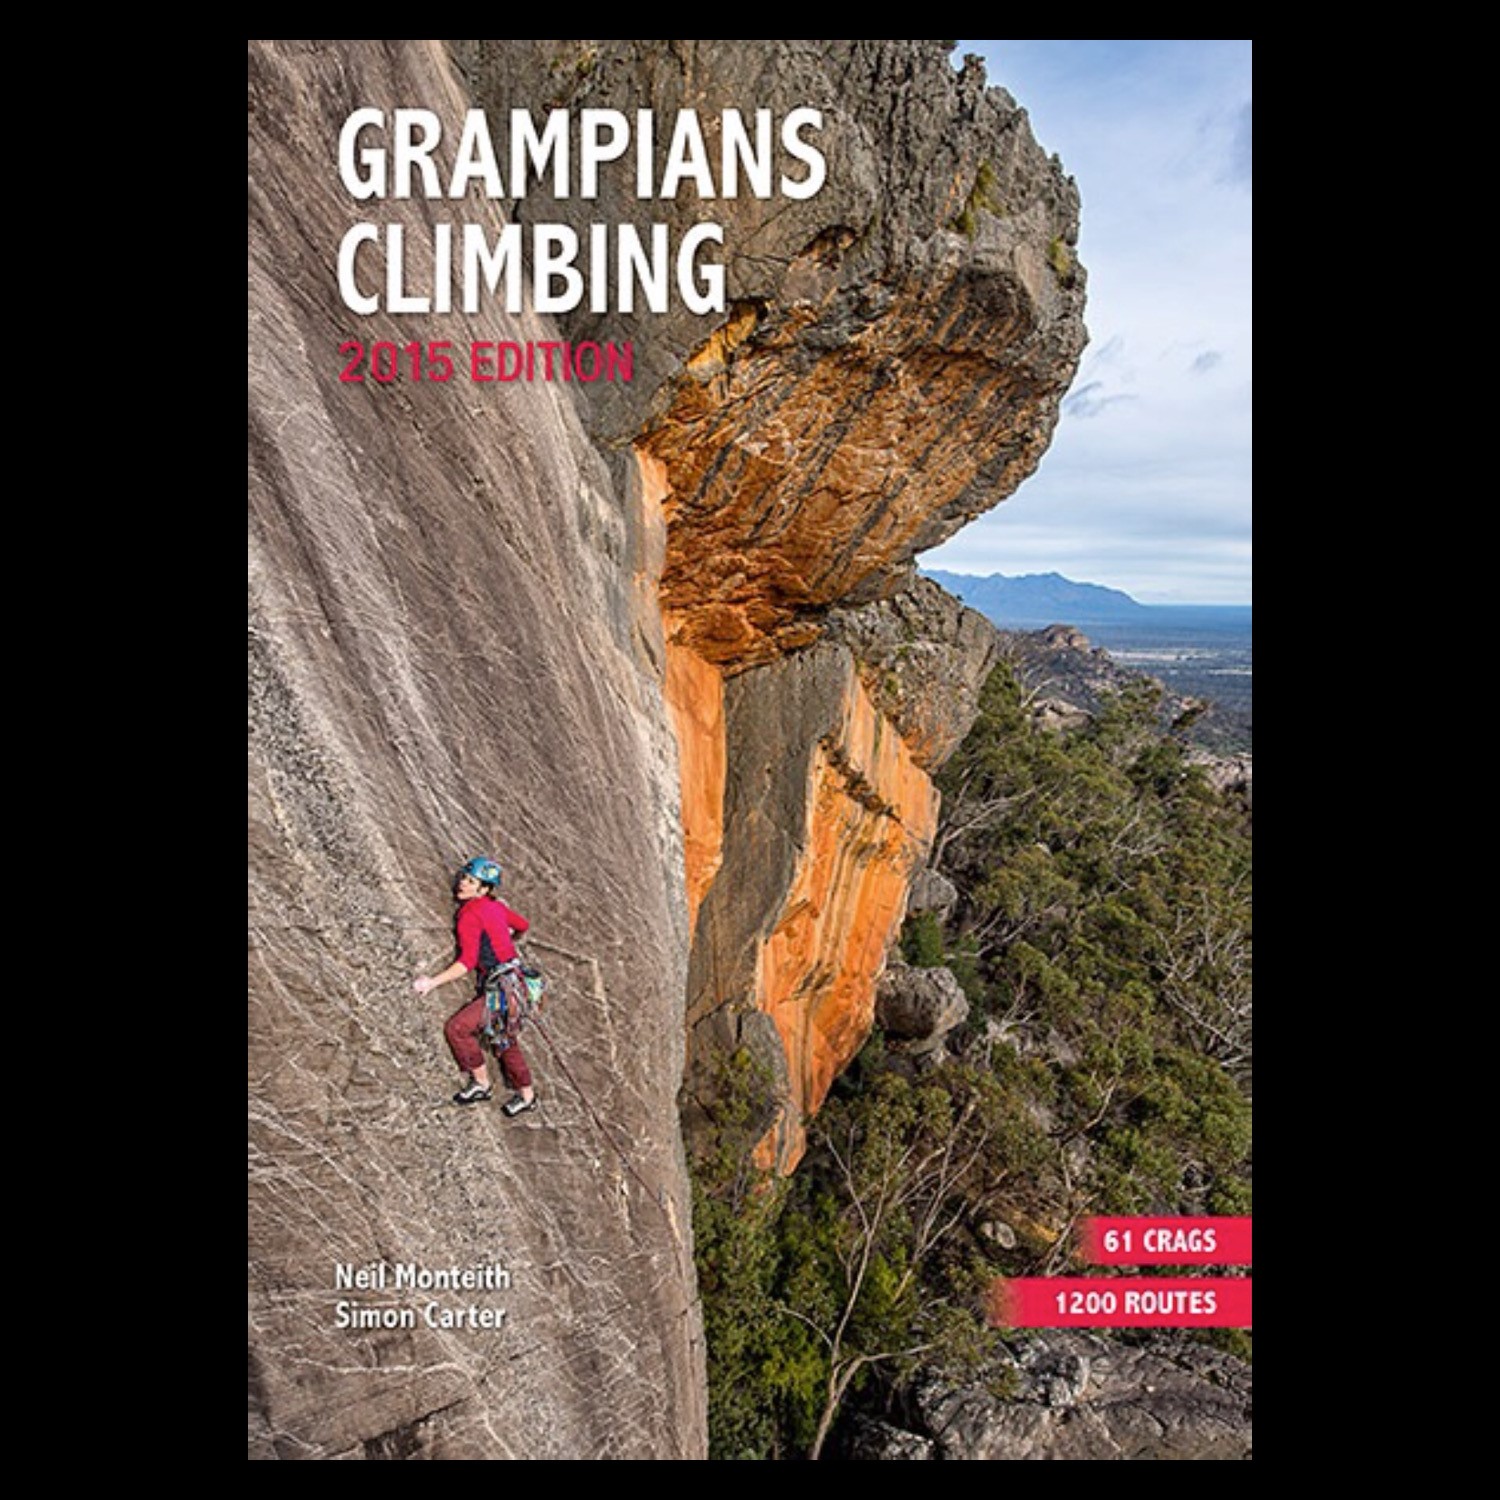 Grampians Climbing 2015